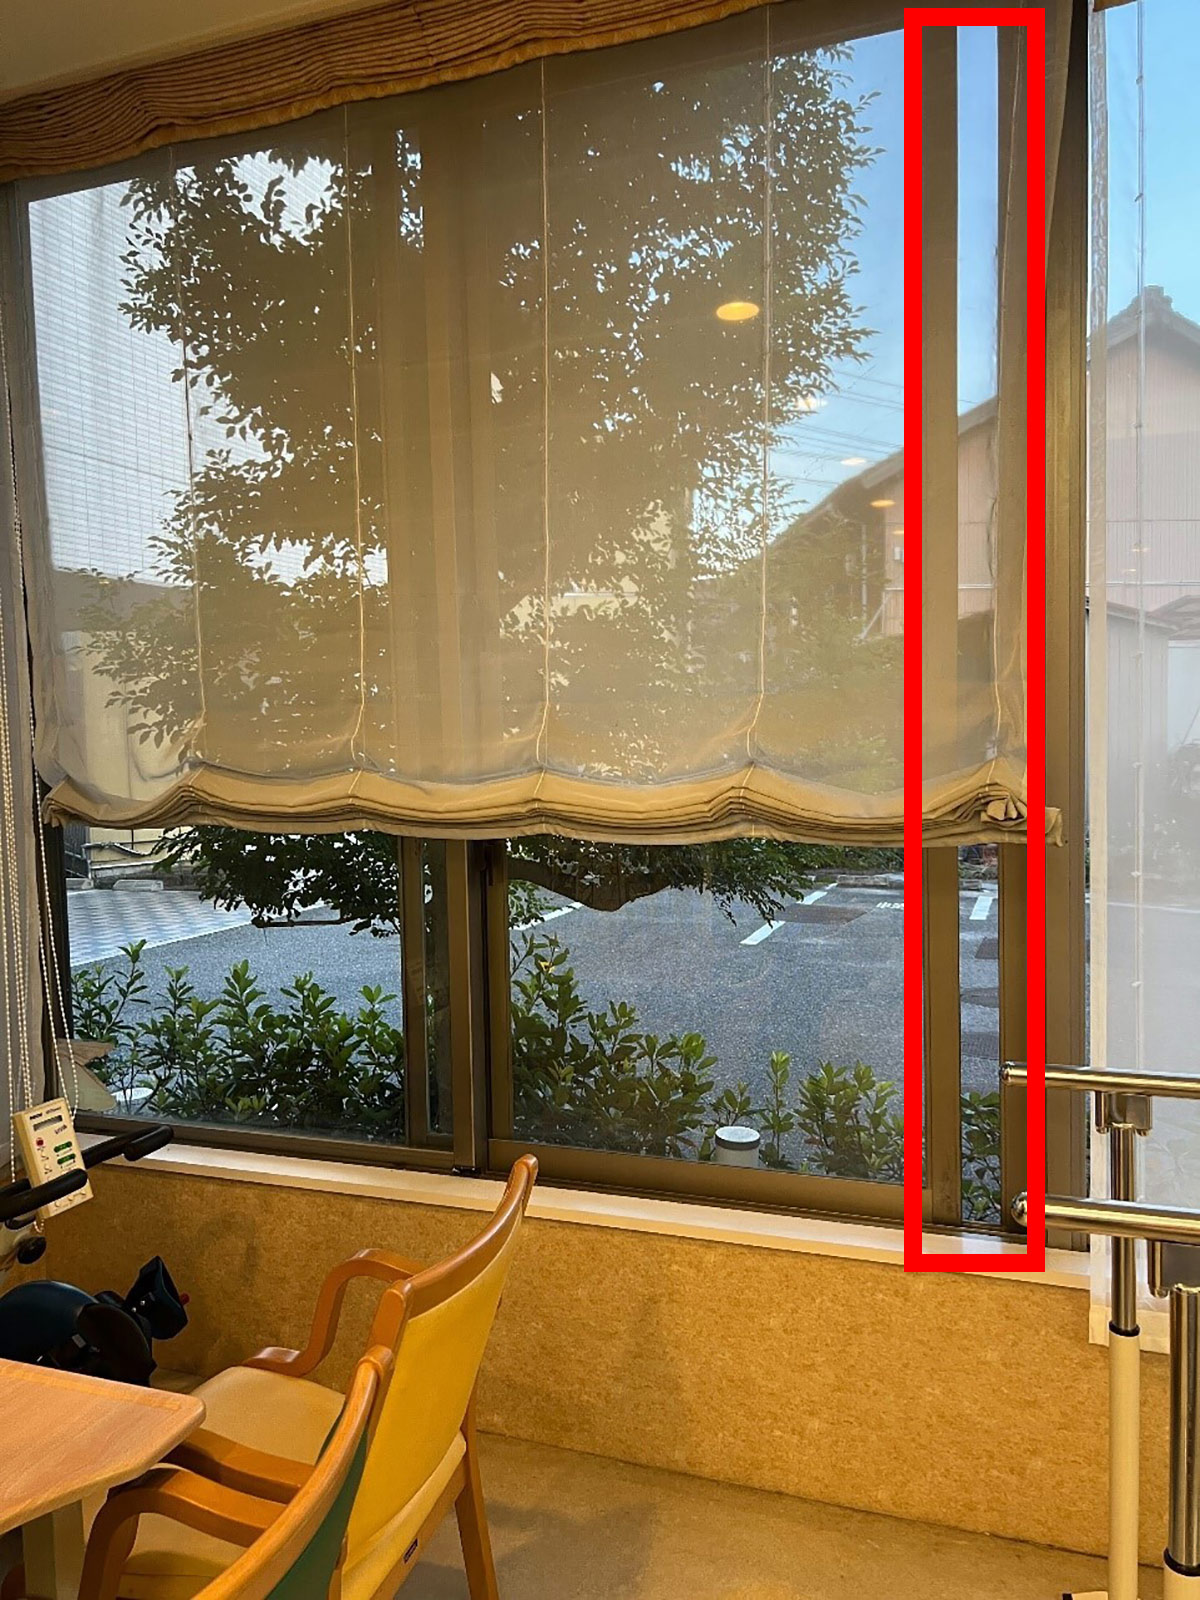 エアロコの導入以降、辻社長にてCO2濃度を測り「最適な窓の開け方」について試行錯誤された。その結果、現状では窓と高窓を数センチ開けるのみで十分な換気ができるという事実が見え、全ての窓を「開けっ放し」にする必要がなくなった。現在では空調の設定温度を2度上げてもなお、夏場の室内が涼しく快適に保たれているという